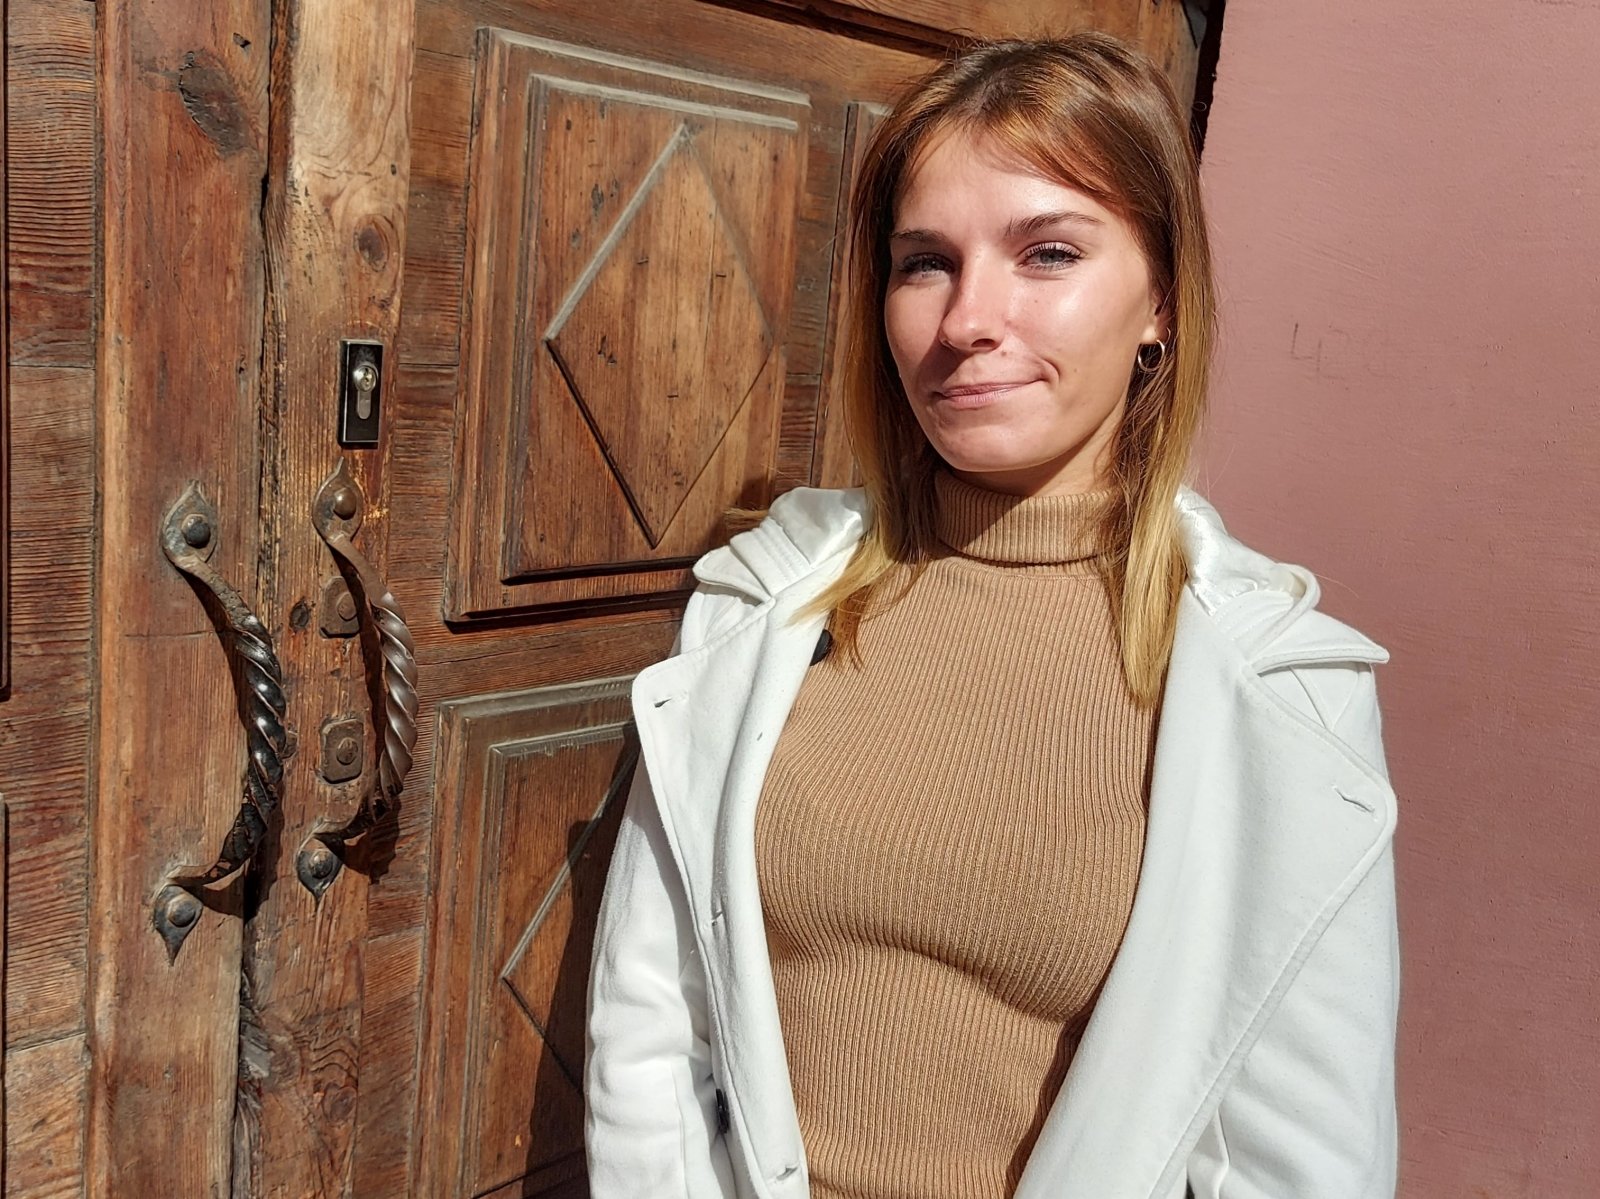 Lina, che è stata adottata da una famiglia italiana 11 anni fa, ha raccontato come è cresciuta in un paese straniero: papà ha imparato a fare gli hash brown da noi